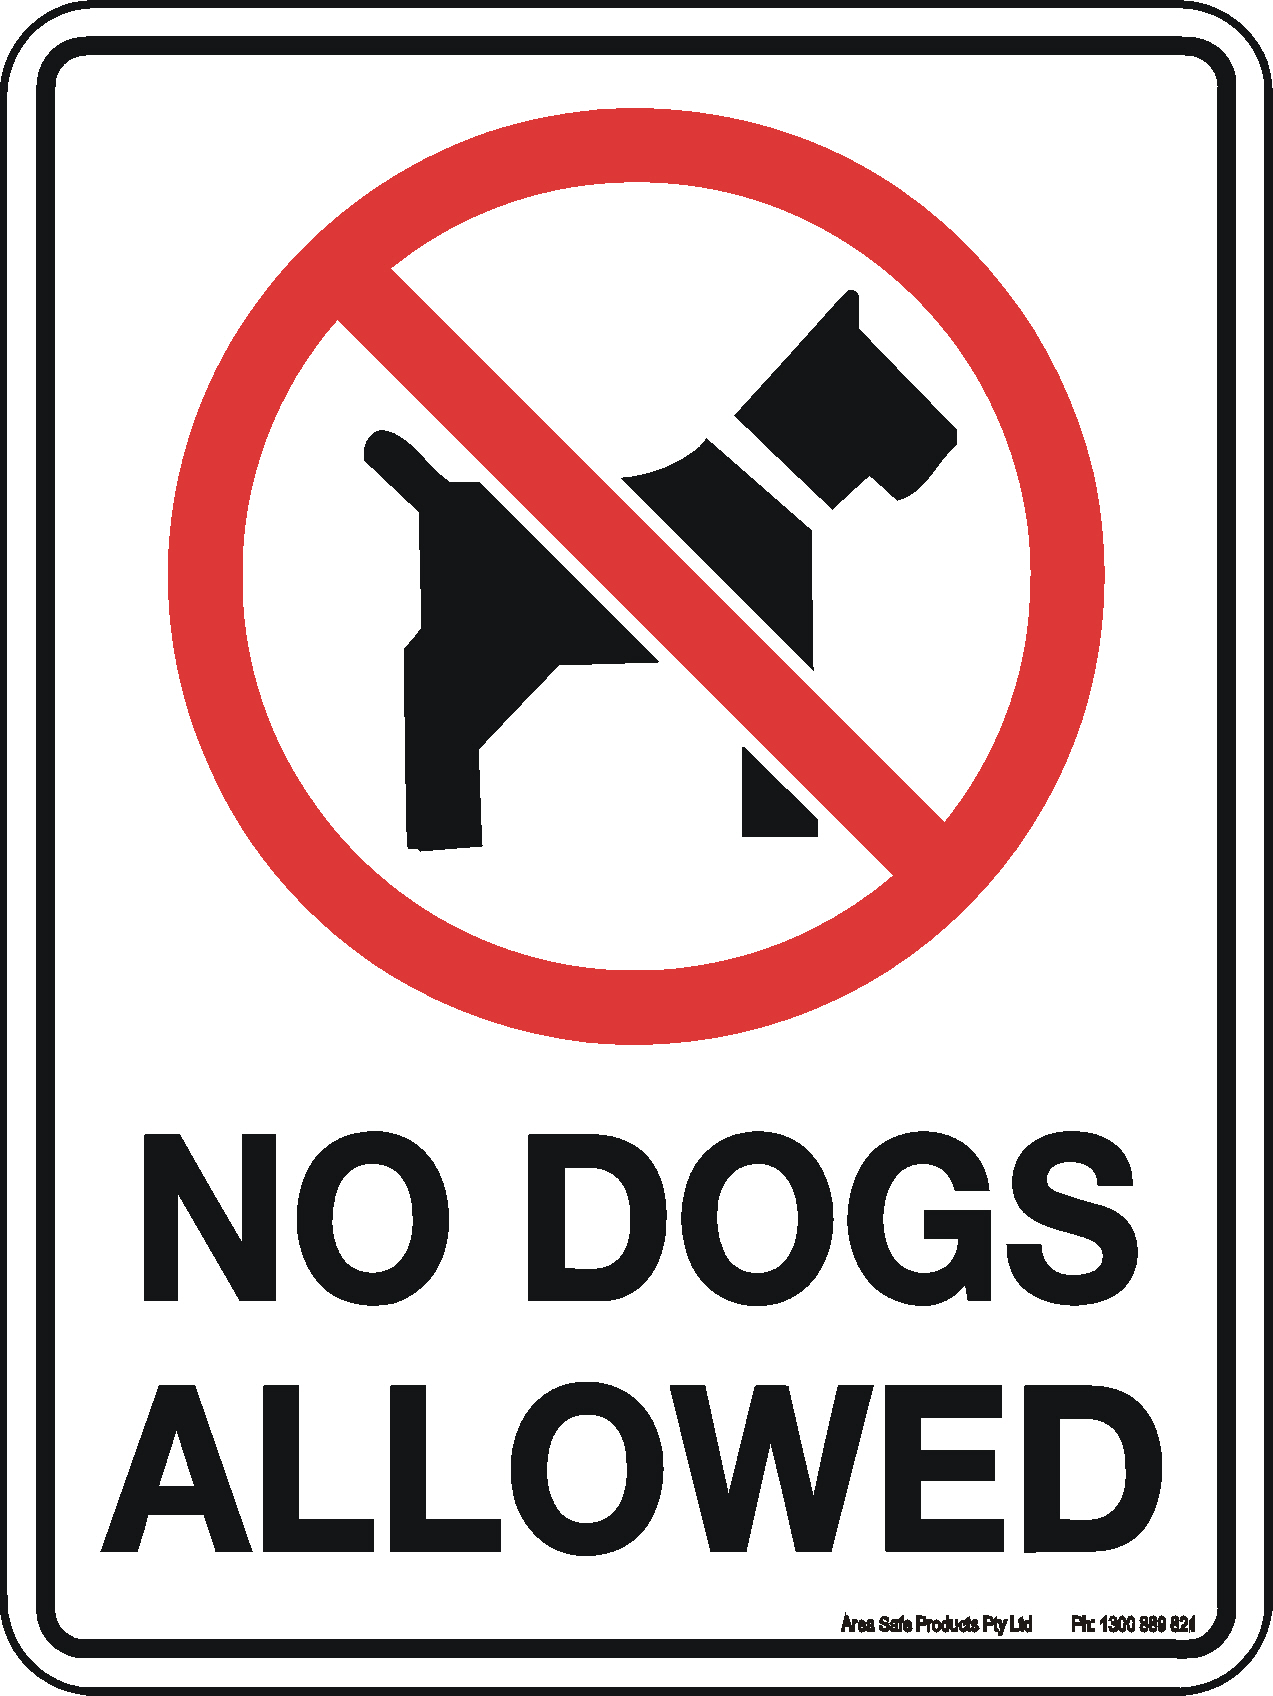 No Pets Allowed Sign Printable - Printable World Holiday